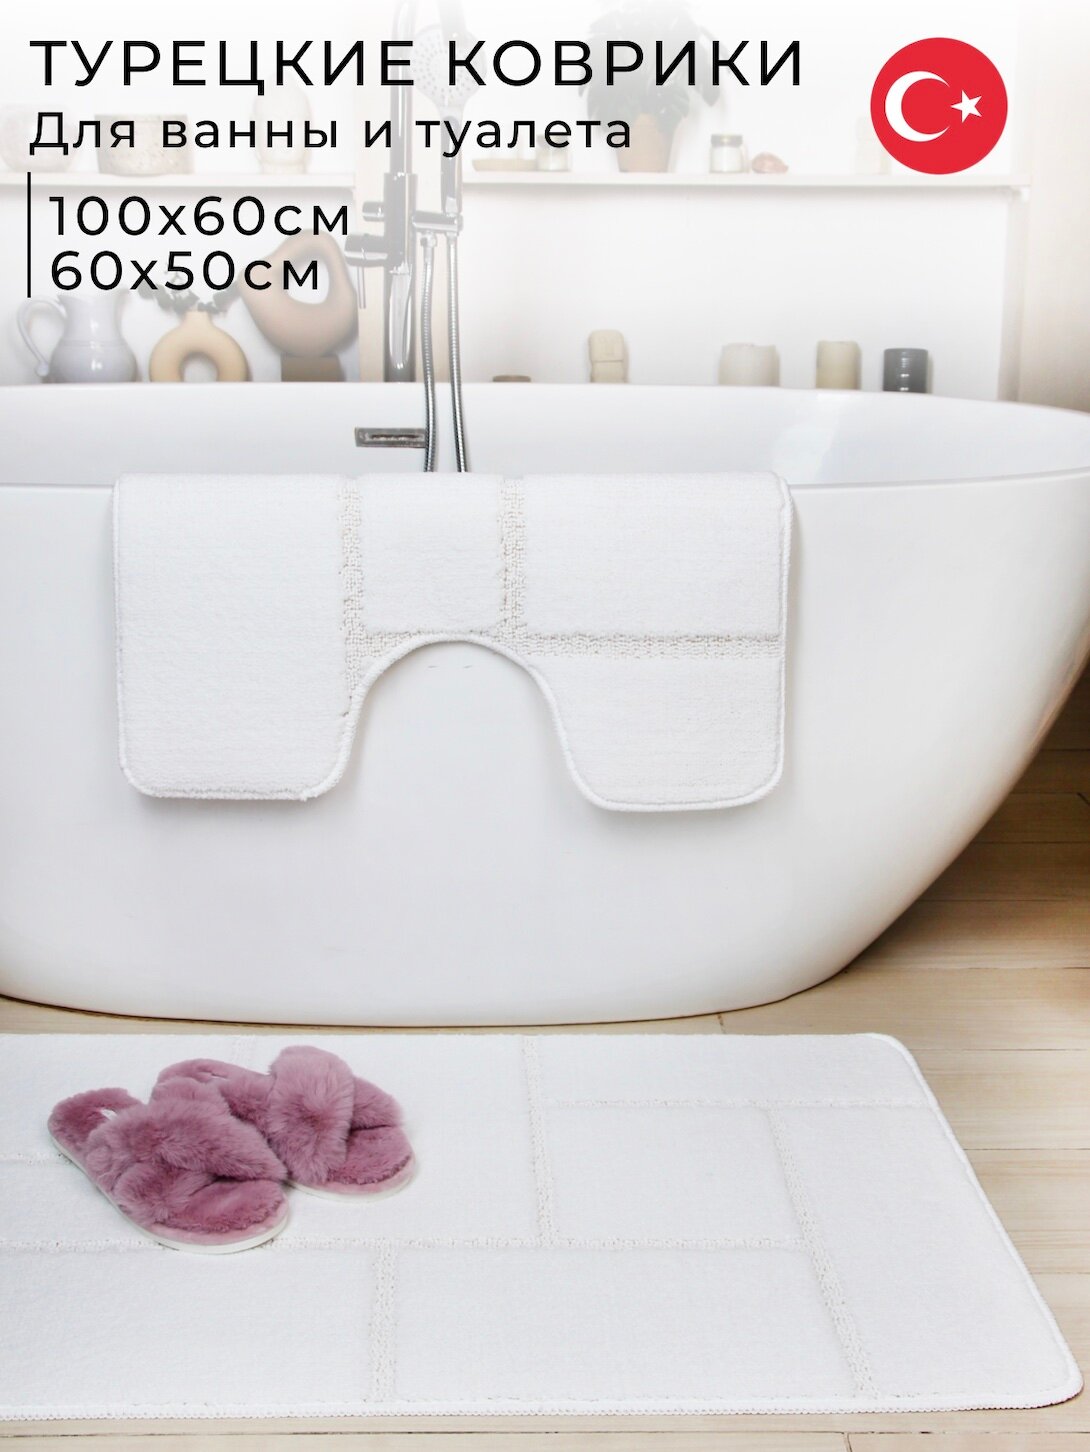 Противоскользящие коврики для ванной и туалета Vonaldi 100х60 см и 60х50 см, белый